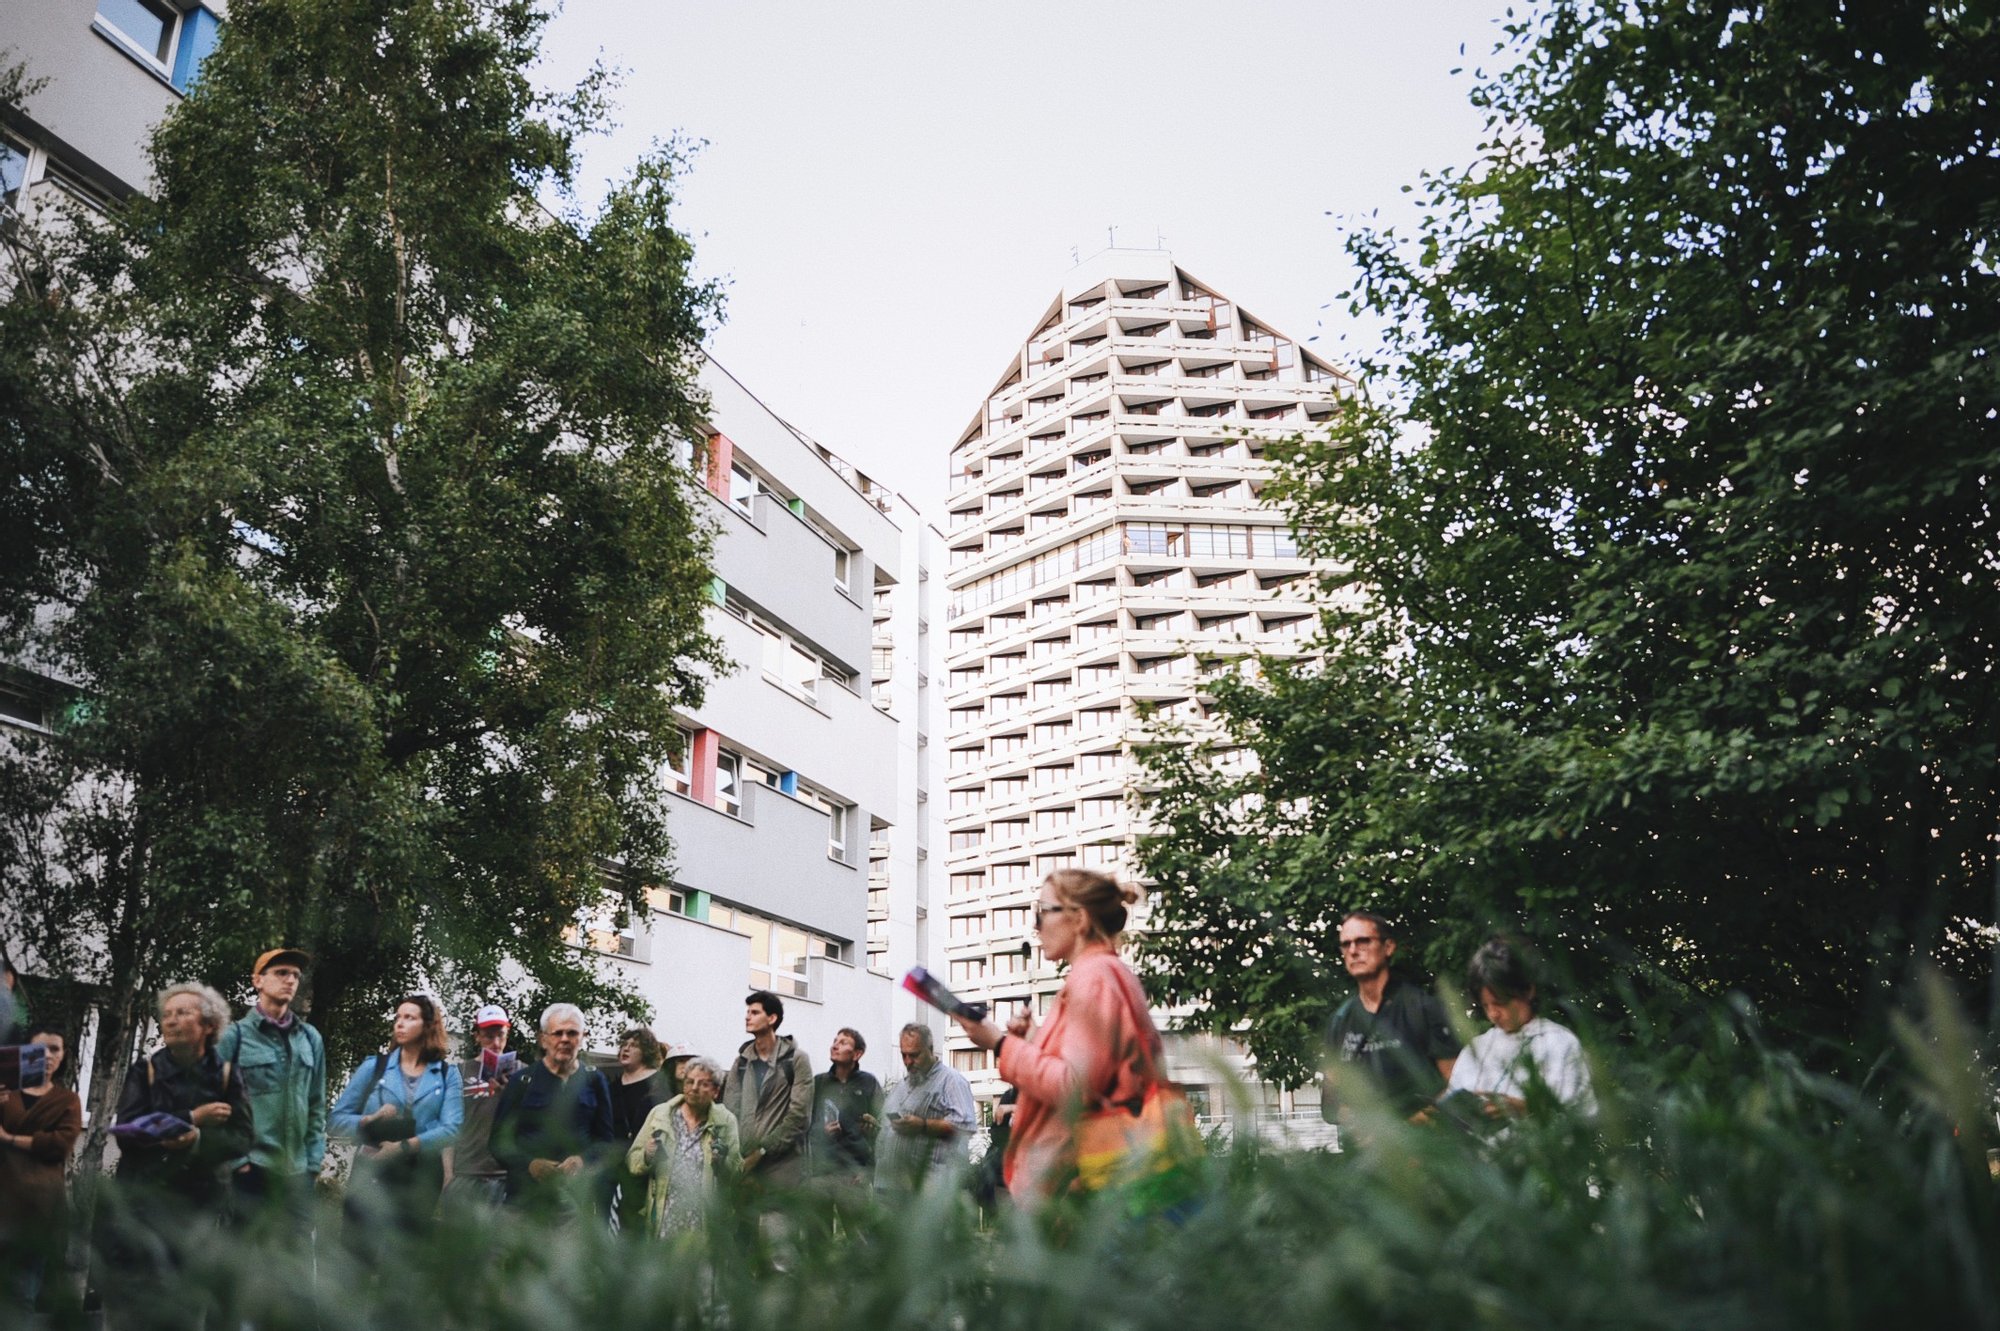 Kolorowa, pozioma fotografia przedstawia grupę osób podczas spaceru z oprowadzaniem po osiedlu. Osoby stoją pod drzewami, w tle za nimi widoczne akademiki Kredka i Ołówek.